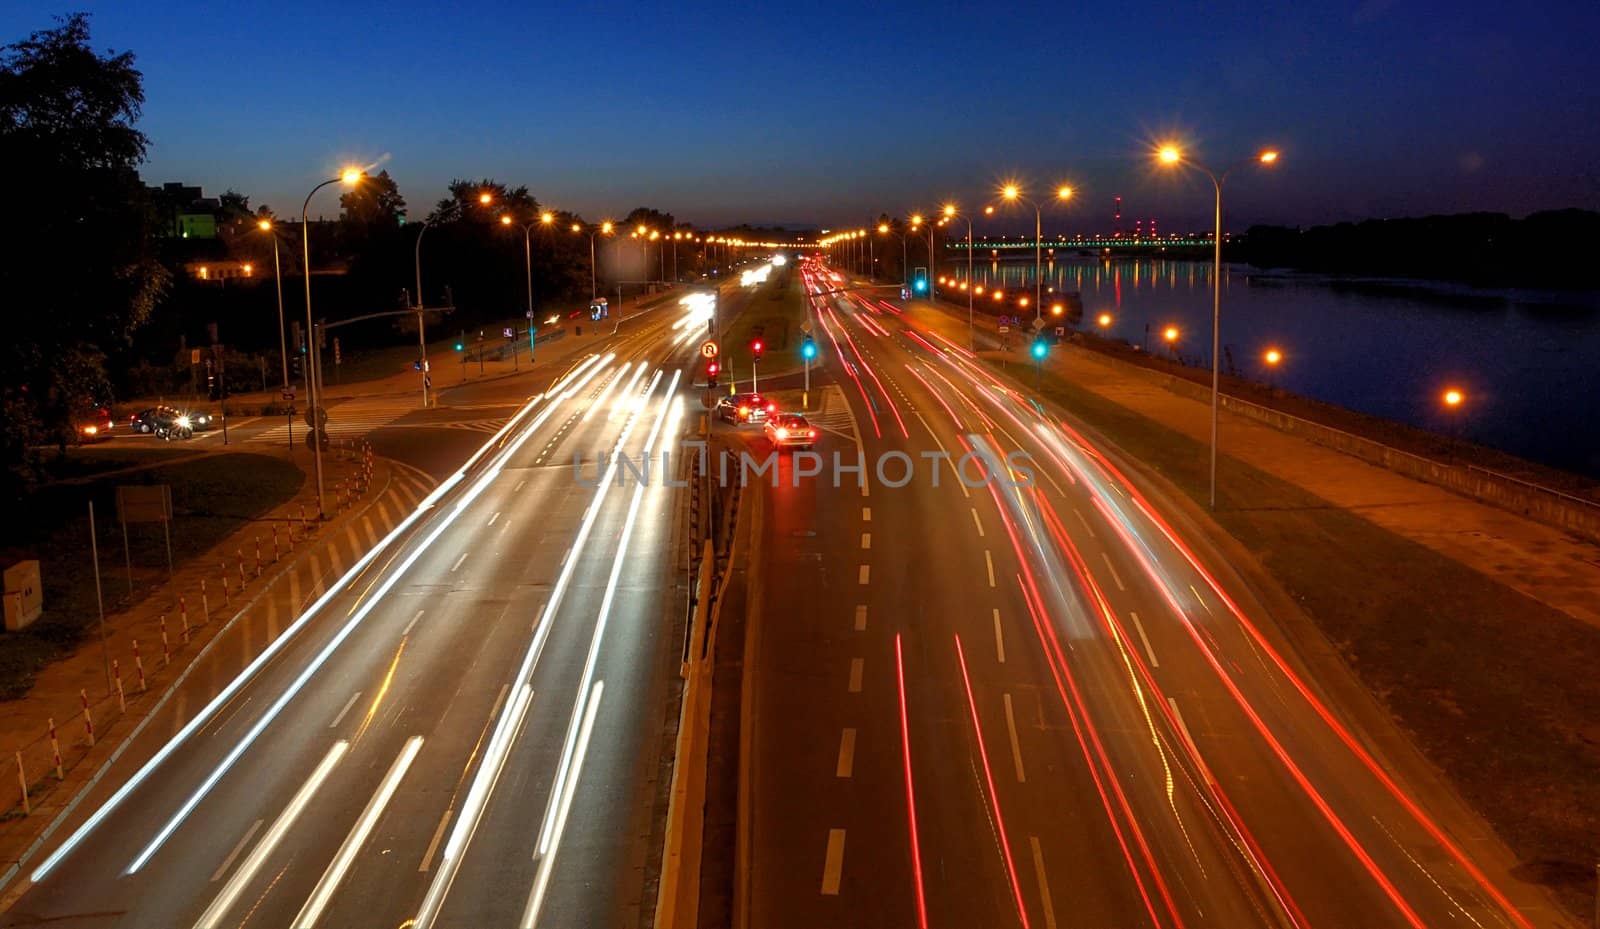 warsaw traffic near bridge at night by arnelsr